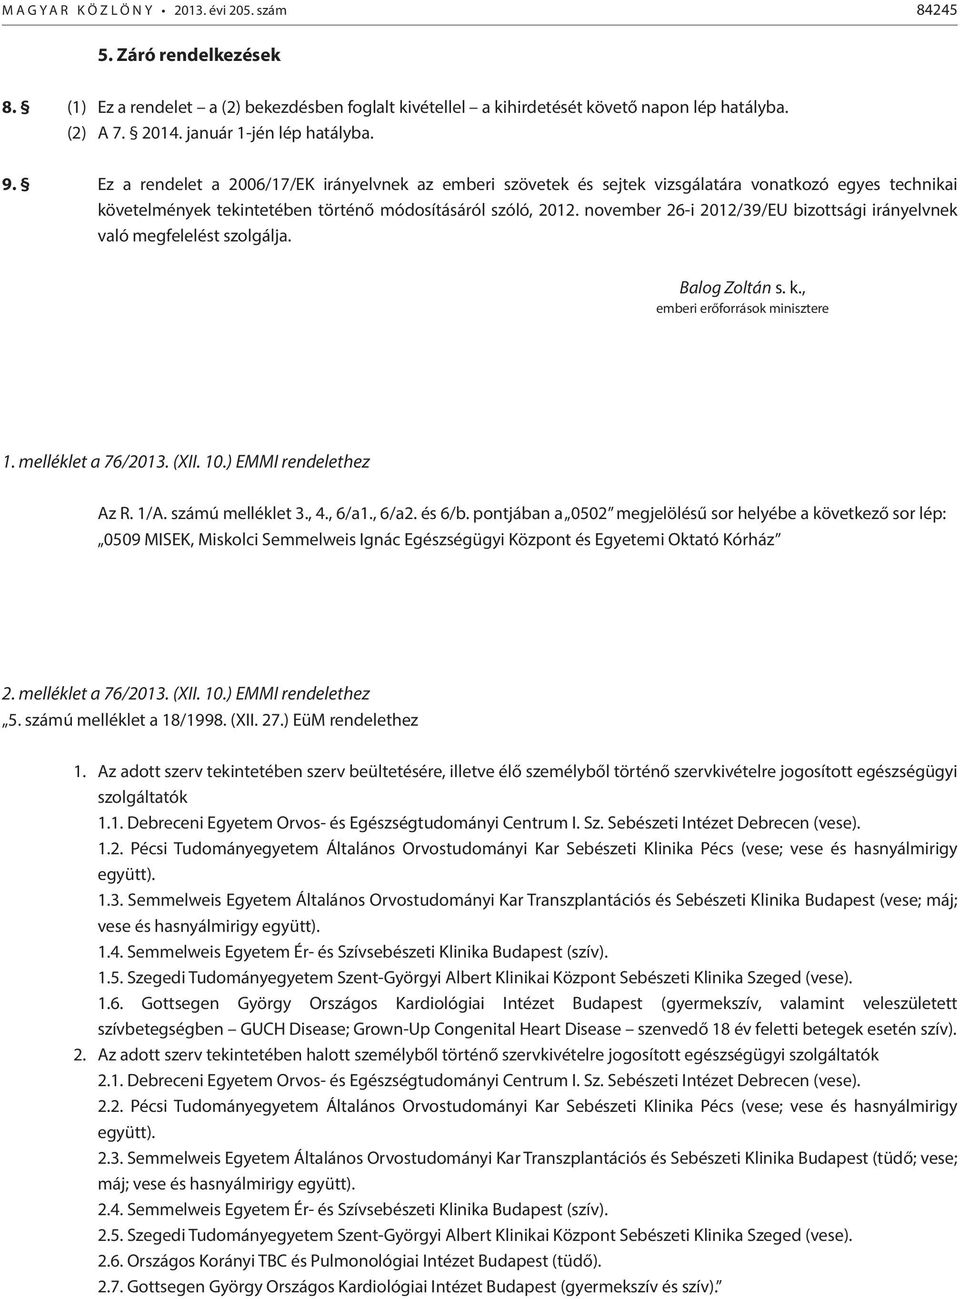 november 26-i 2012/39/EU bizottsági irányelvnek való megfelelést szolgálja. Balog Zoltán s. k., emberi erőforrások minisztere 1. melléklet a 76/2013. (XII. 10.) EMMI rendelethez Az R. 1/A.